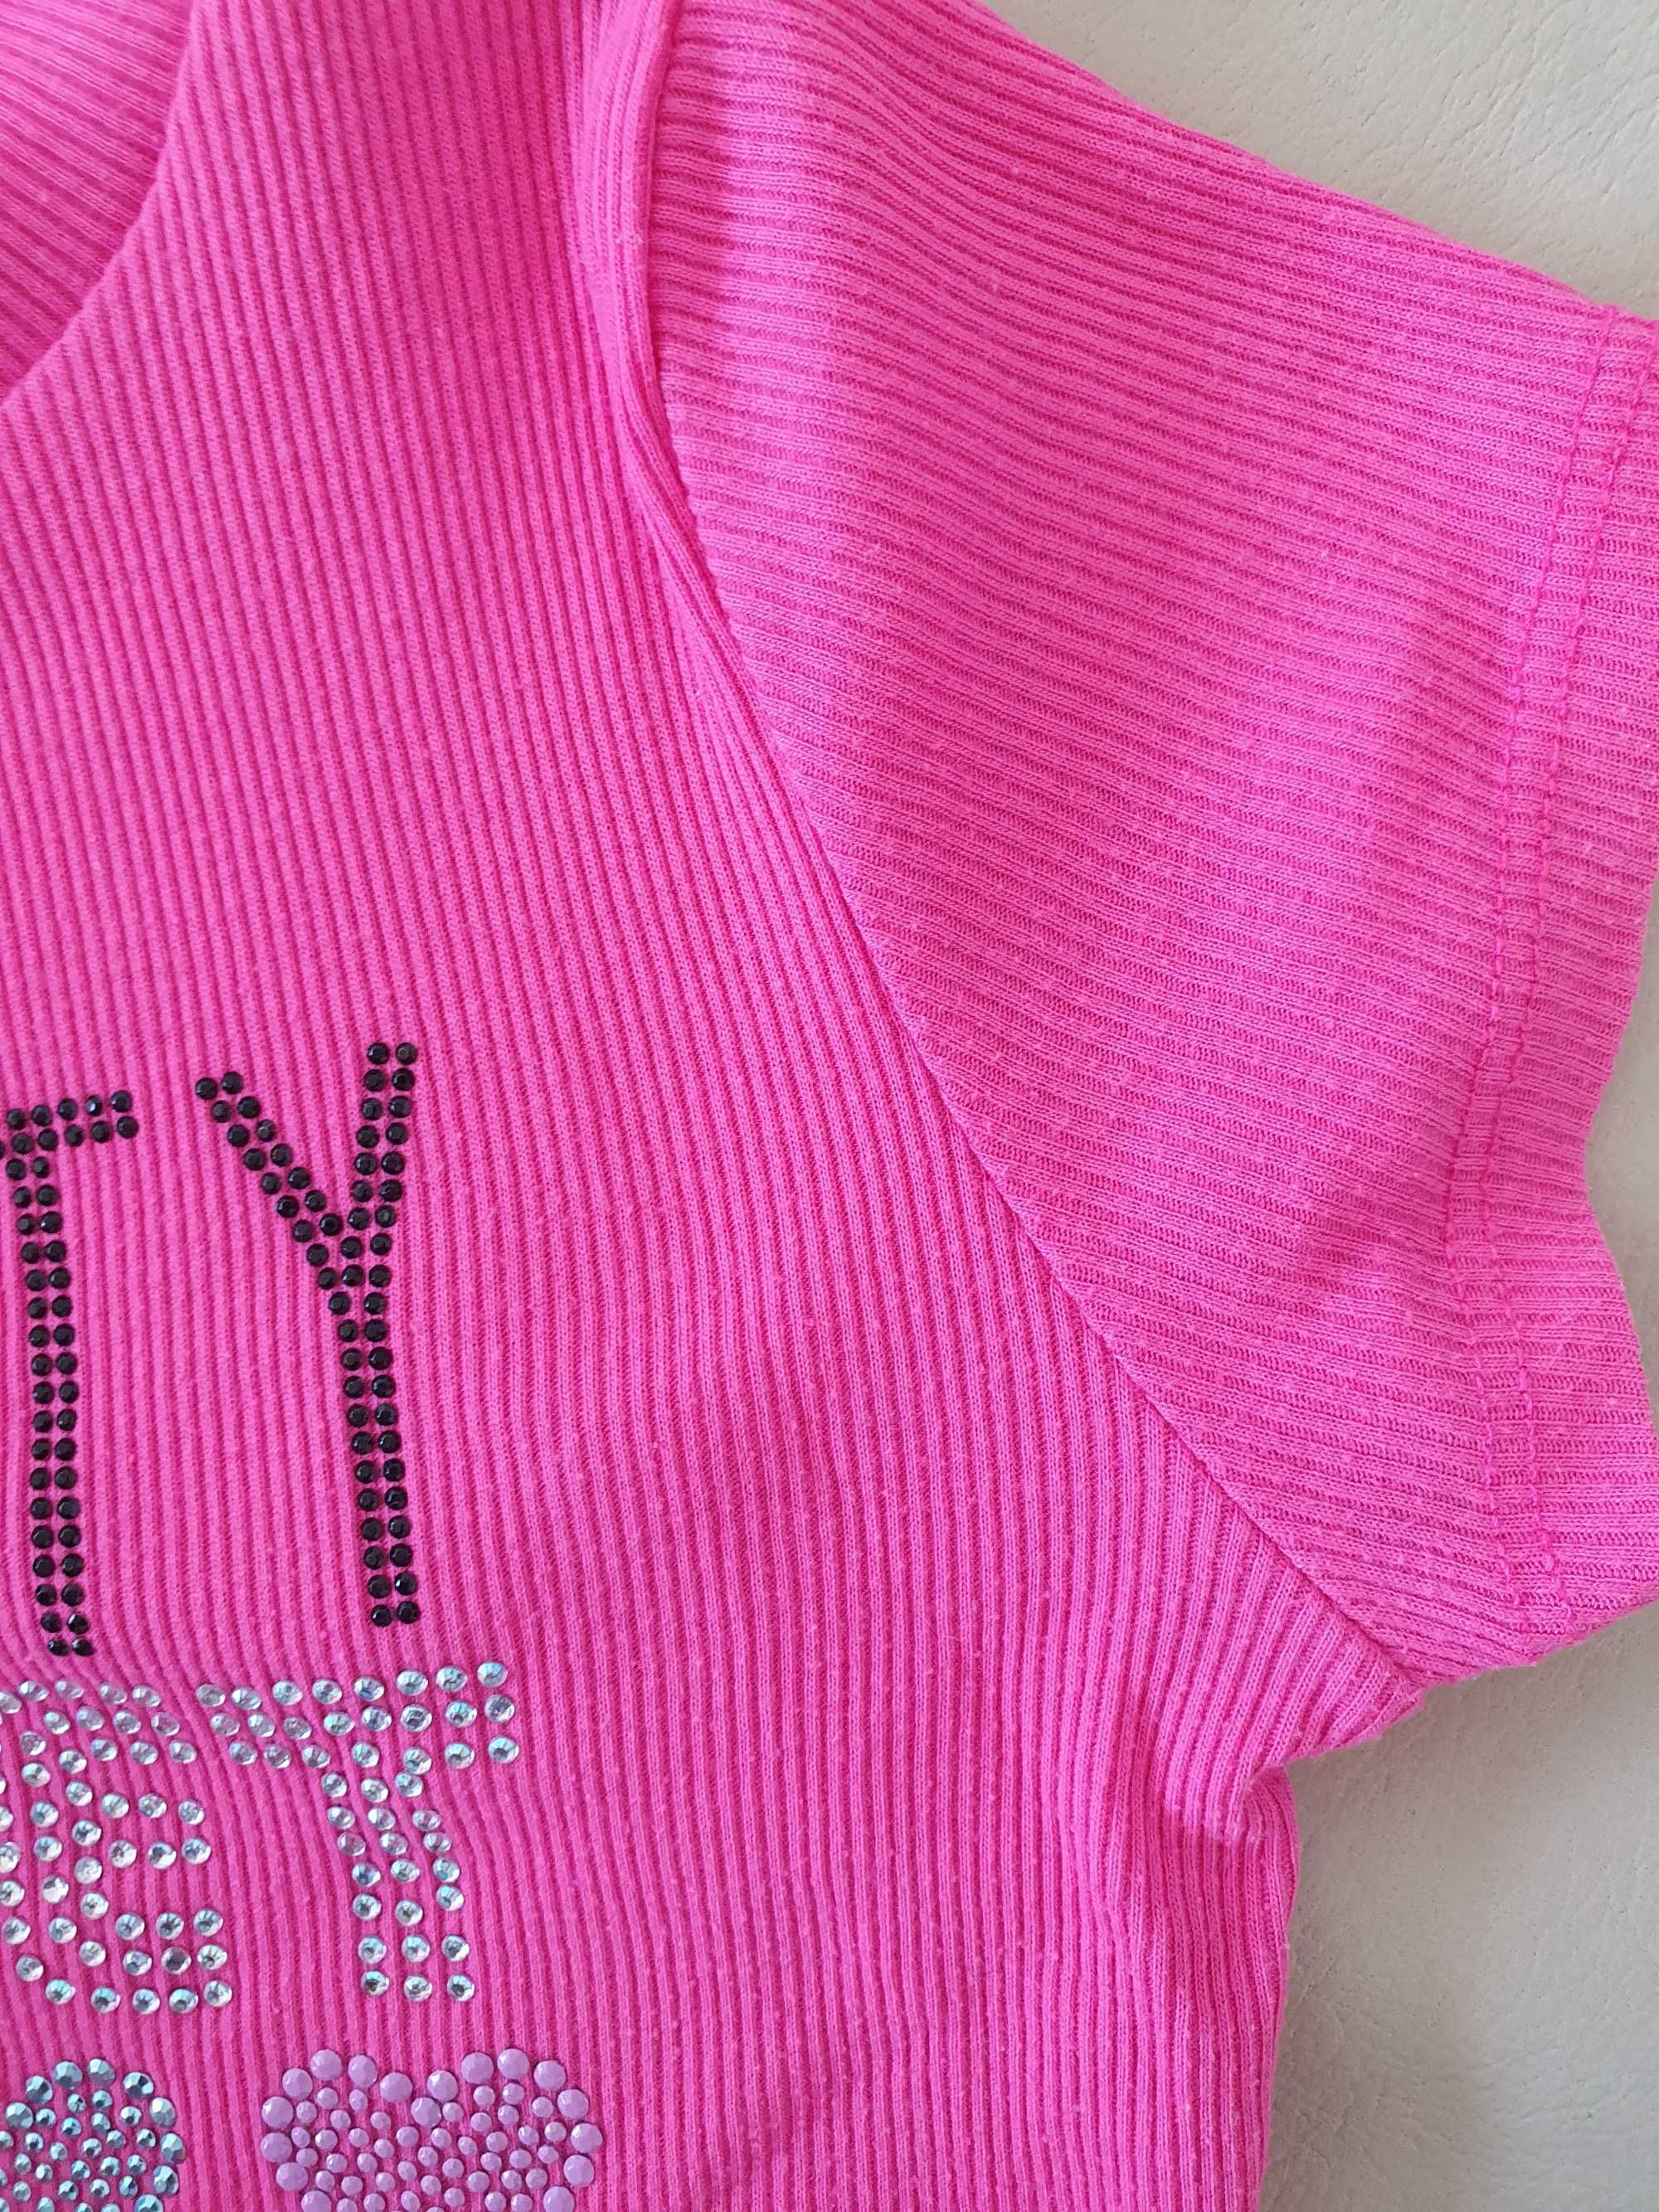 Детска рокля Pink&Violet - размер 6/6X